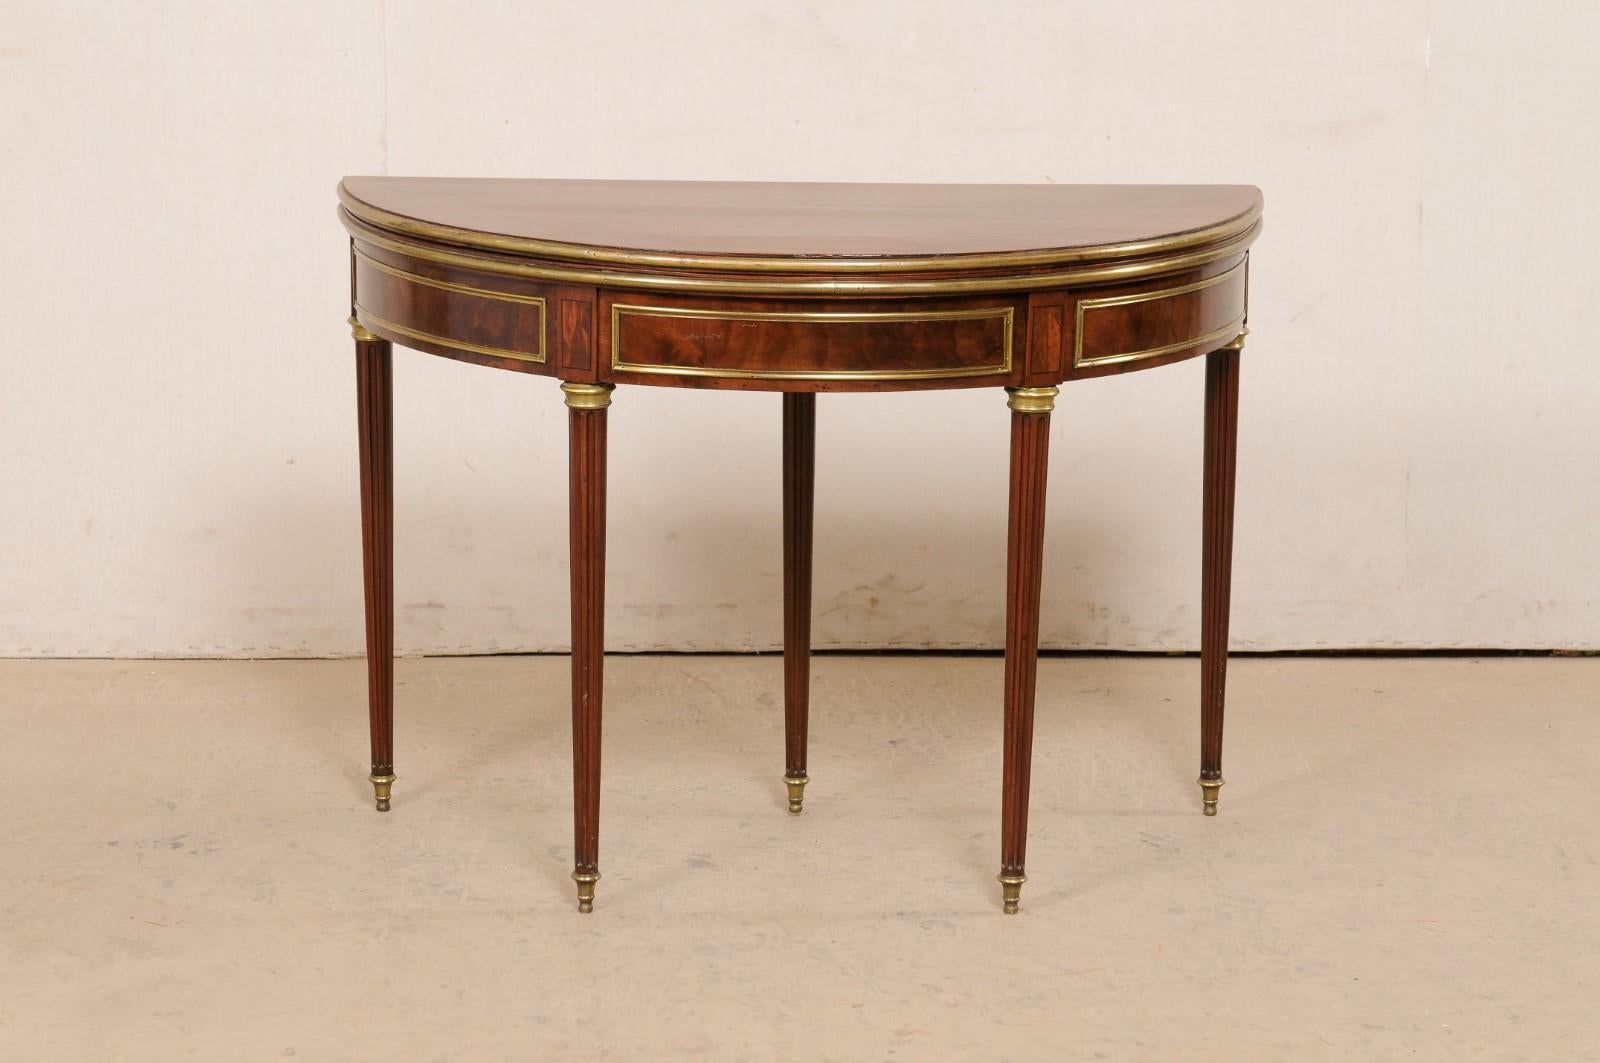 Ein eleganter französischer neoklassizistischer halbrunder Tisch mit Messingakzenten aus dem frühen bis mittleren 19. Jahrhundert. Dieser antike Demi-Lune-Tisch aus Frankreich hat eine halbmondförmige Platte über einer abgerundeten Schürze und steht